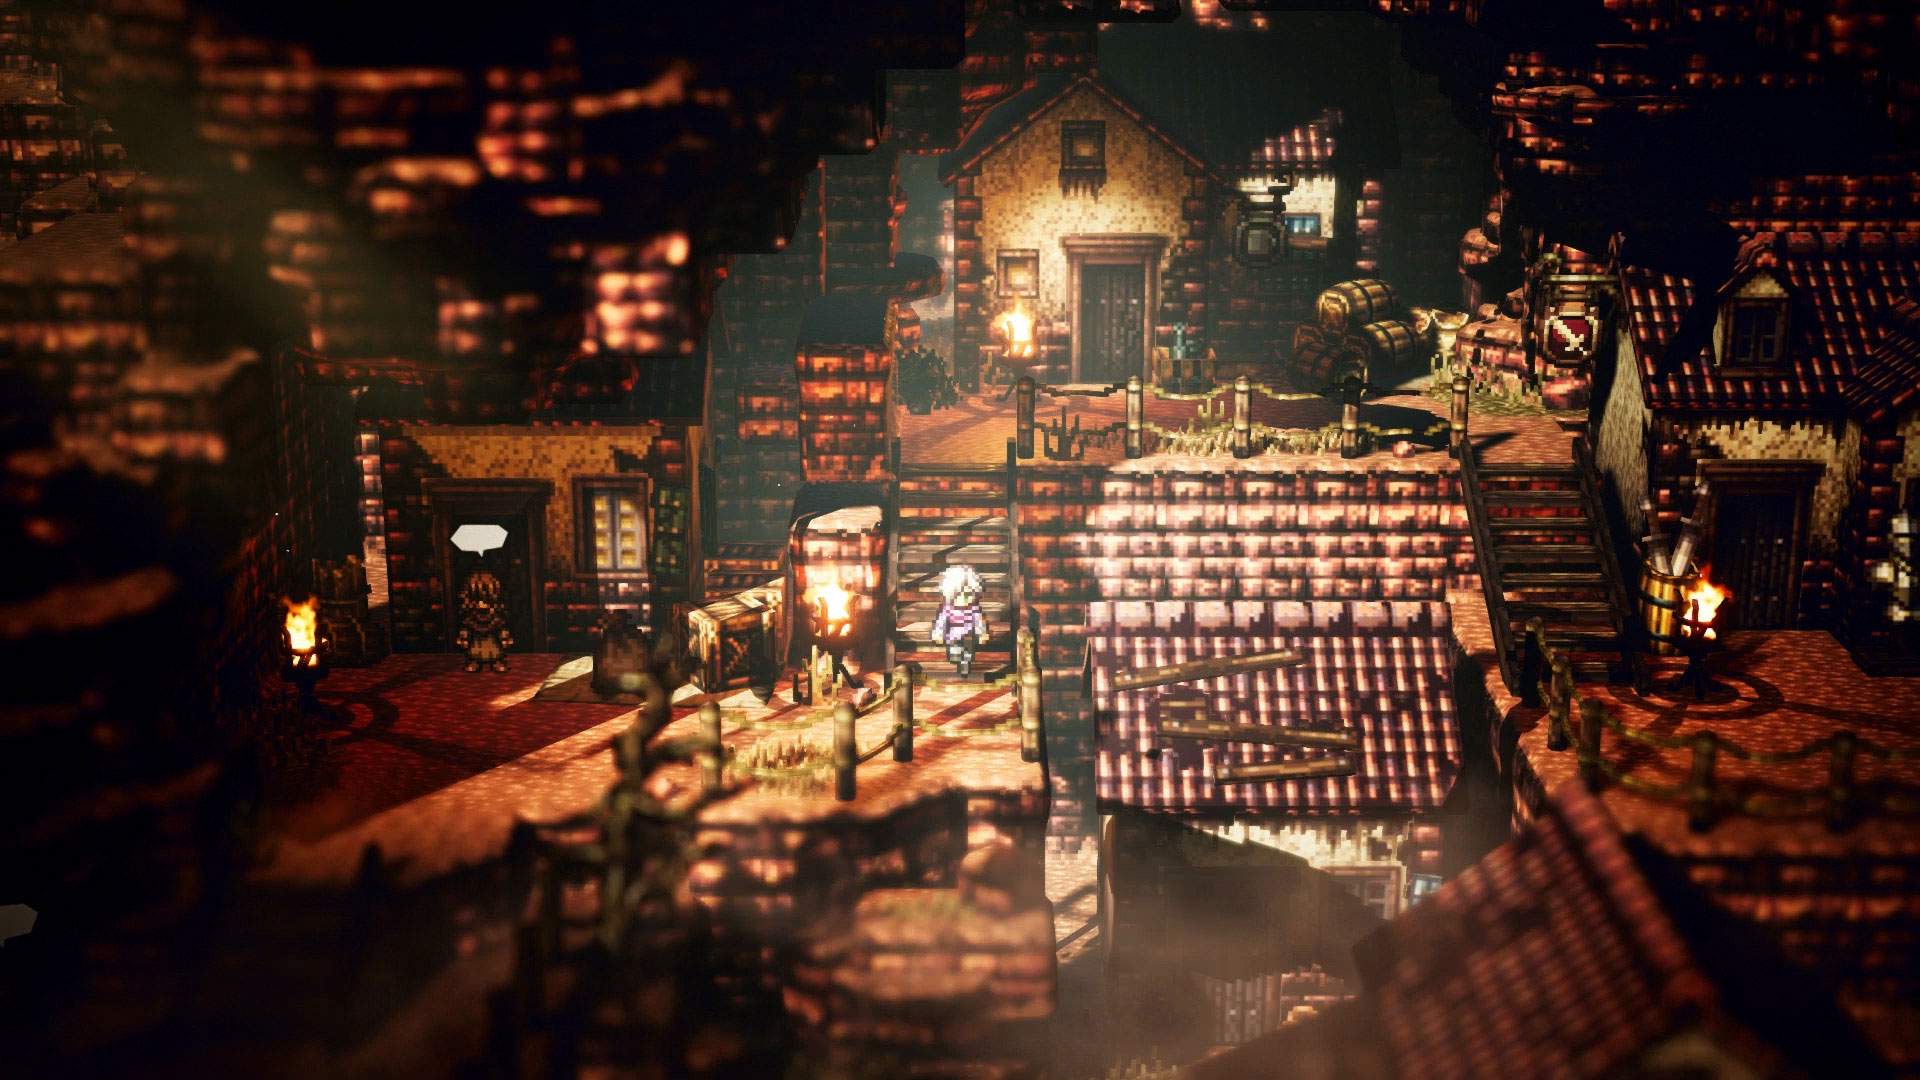 Captura de tela do jogo: Therion descendo escadas ao entardecer em meio a uma vila medieval.